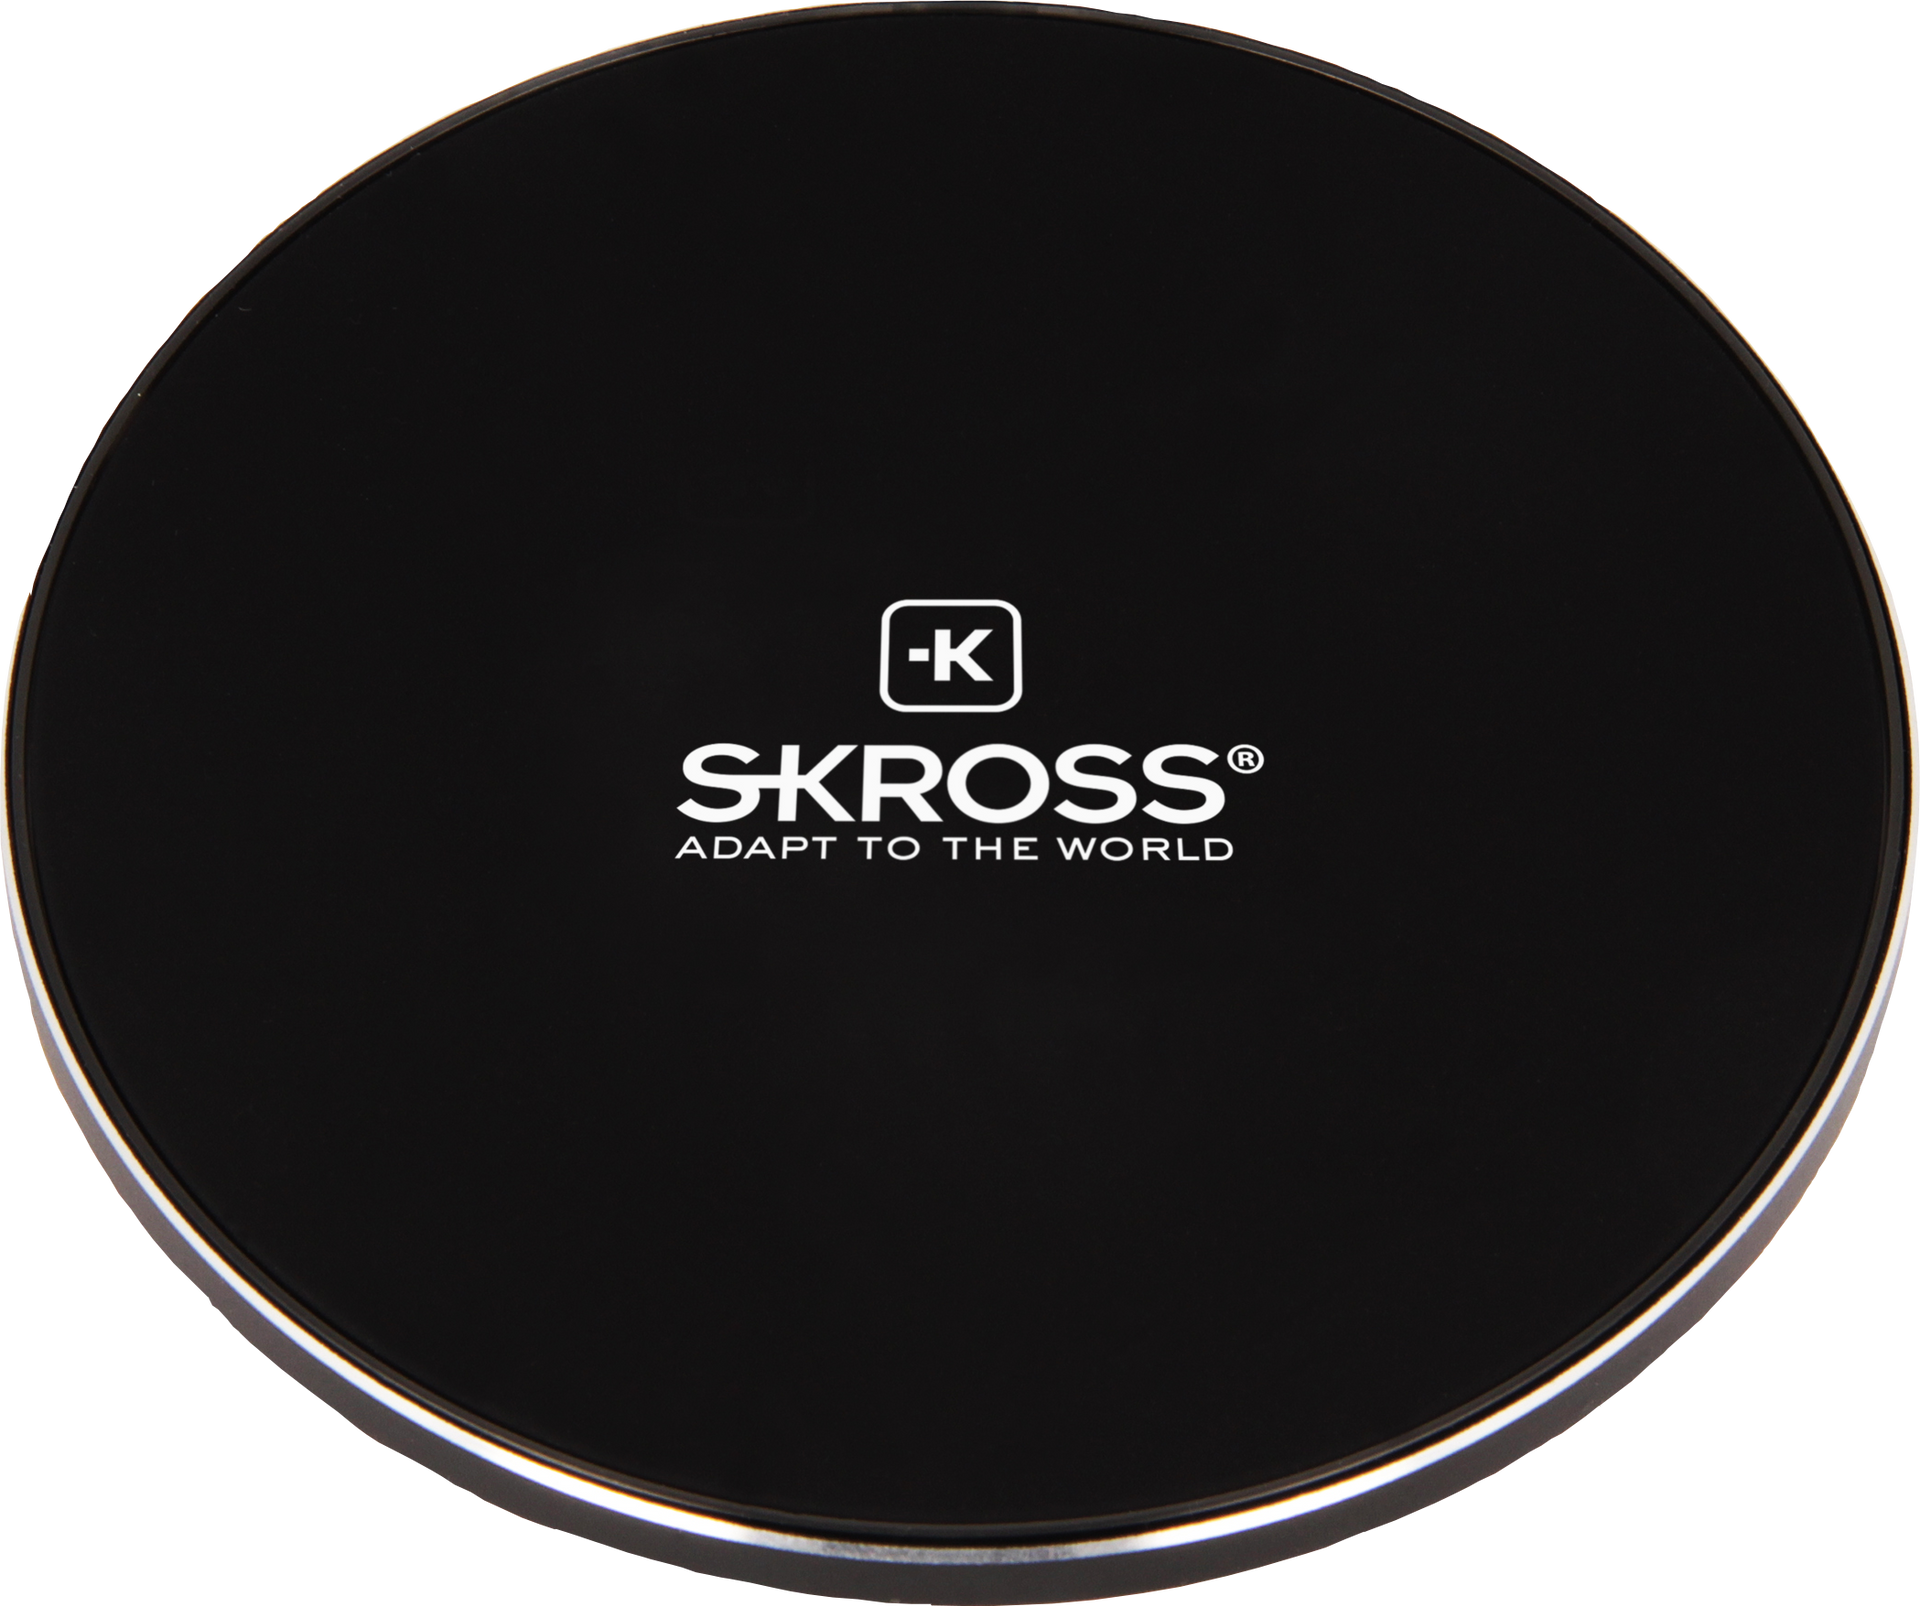 Skross Wireless Charger SKR-0225